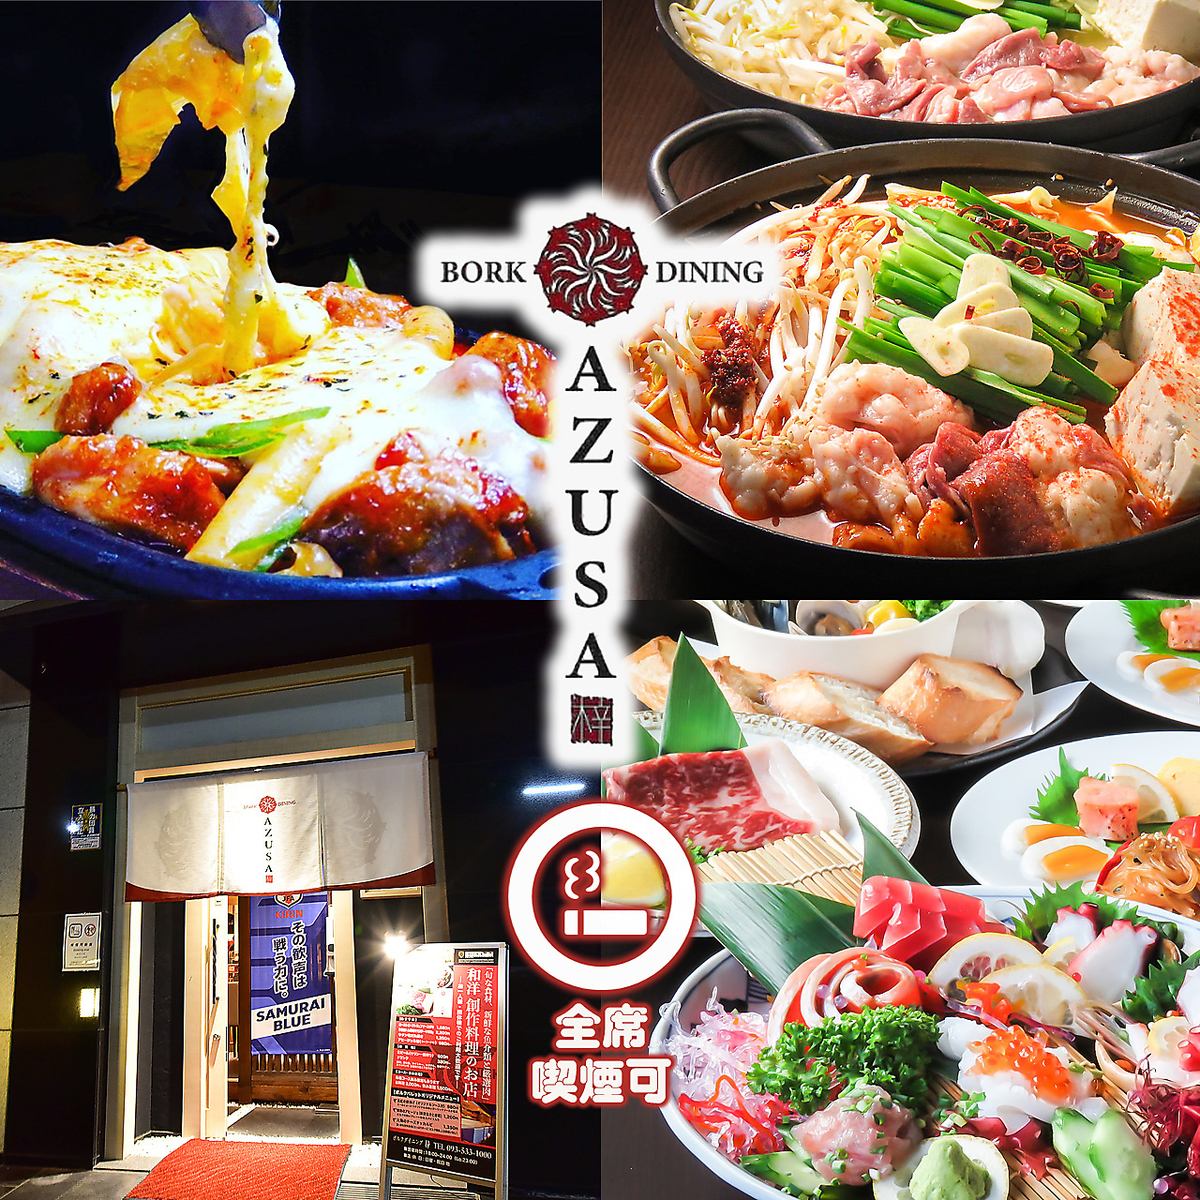 제철 생선, 냄비, 와규 스테이크, 선수의 당지 음식을 즐길 수 있는 일본양 창작 요리의 가게